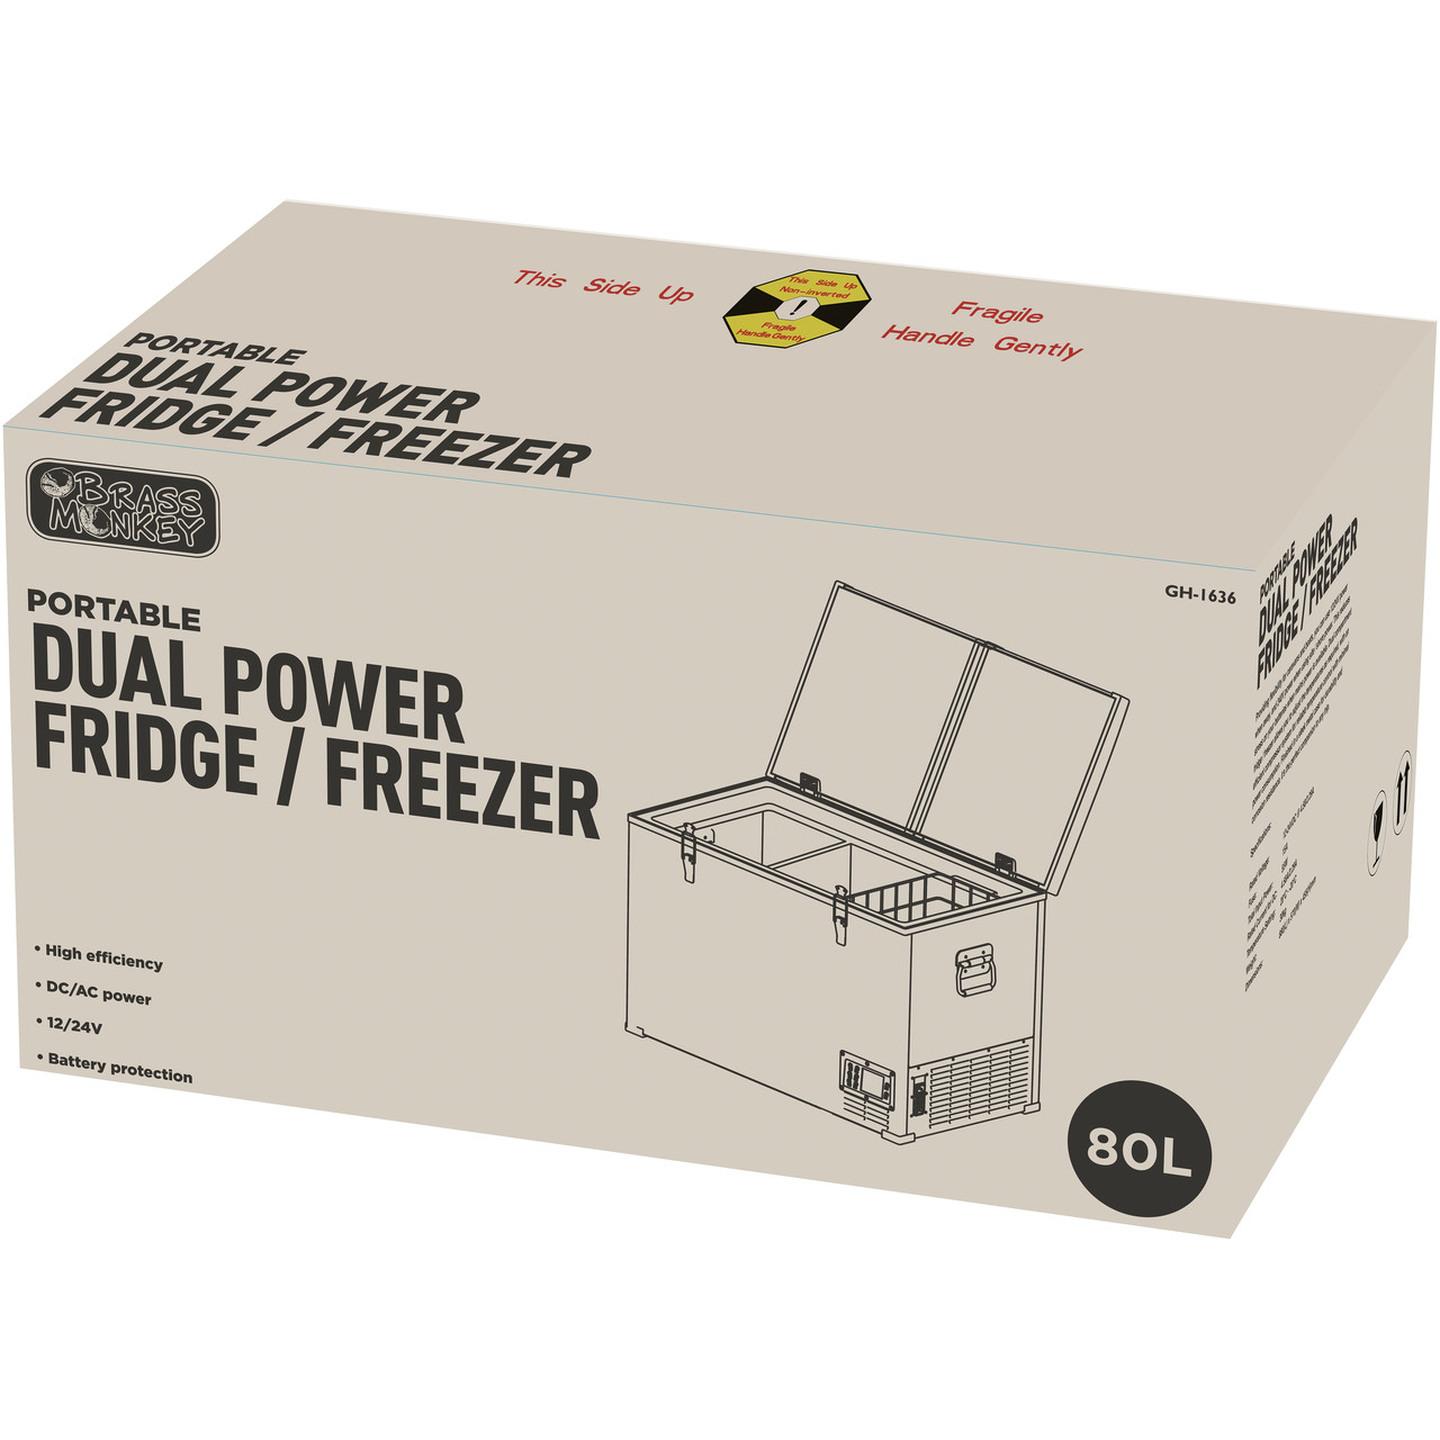 80L Brass Monkey Dual Zone Portable Fridge / Freezer